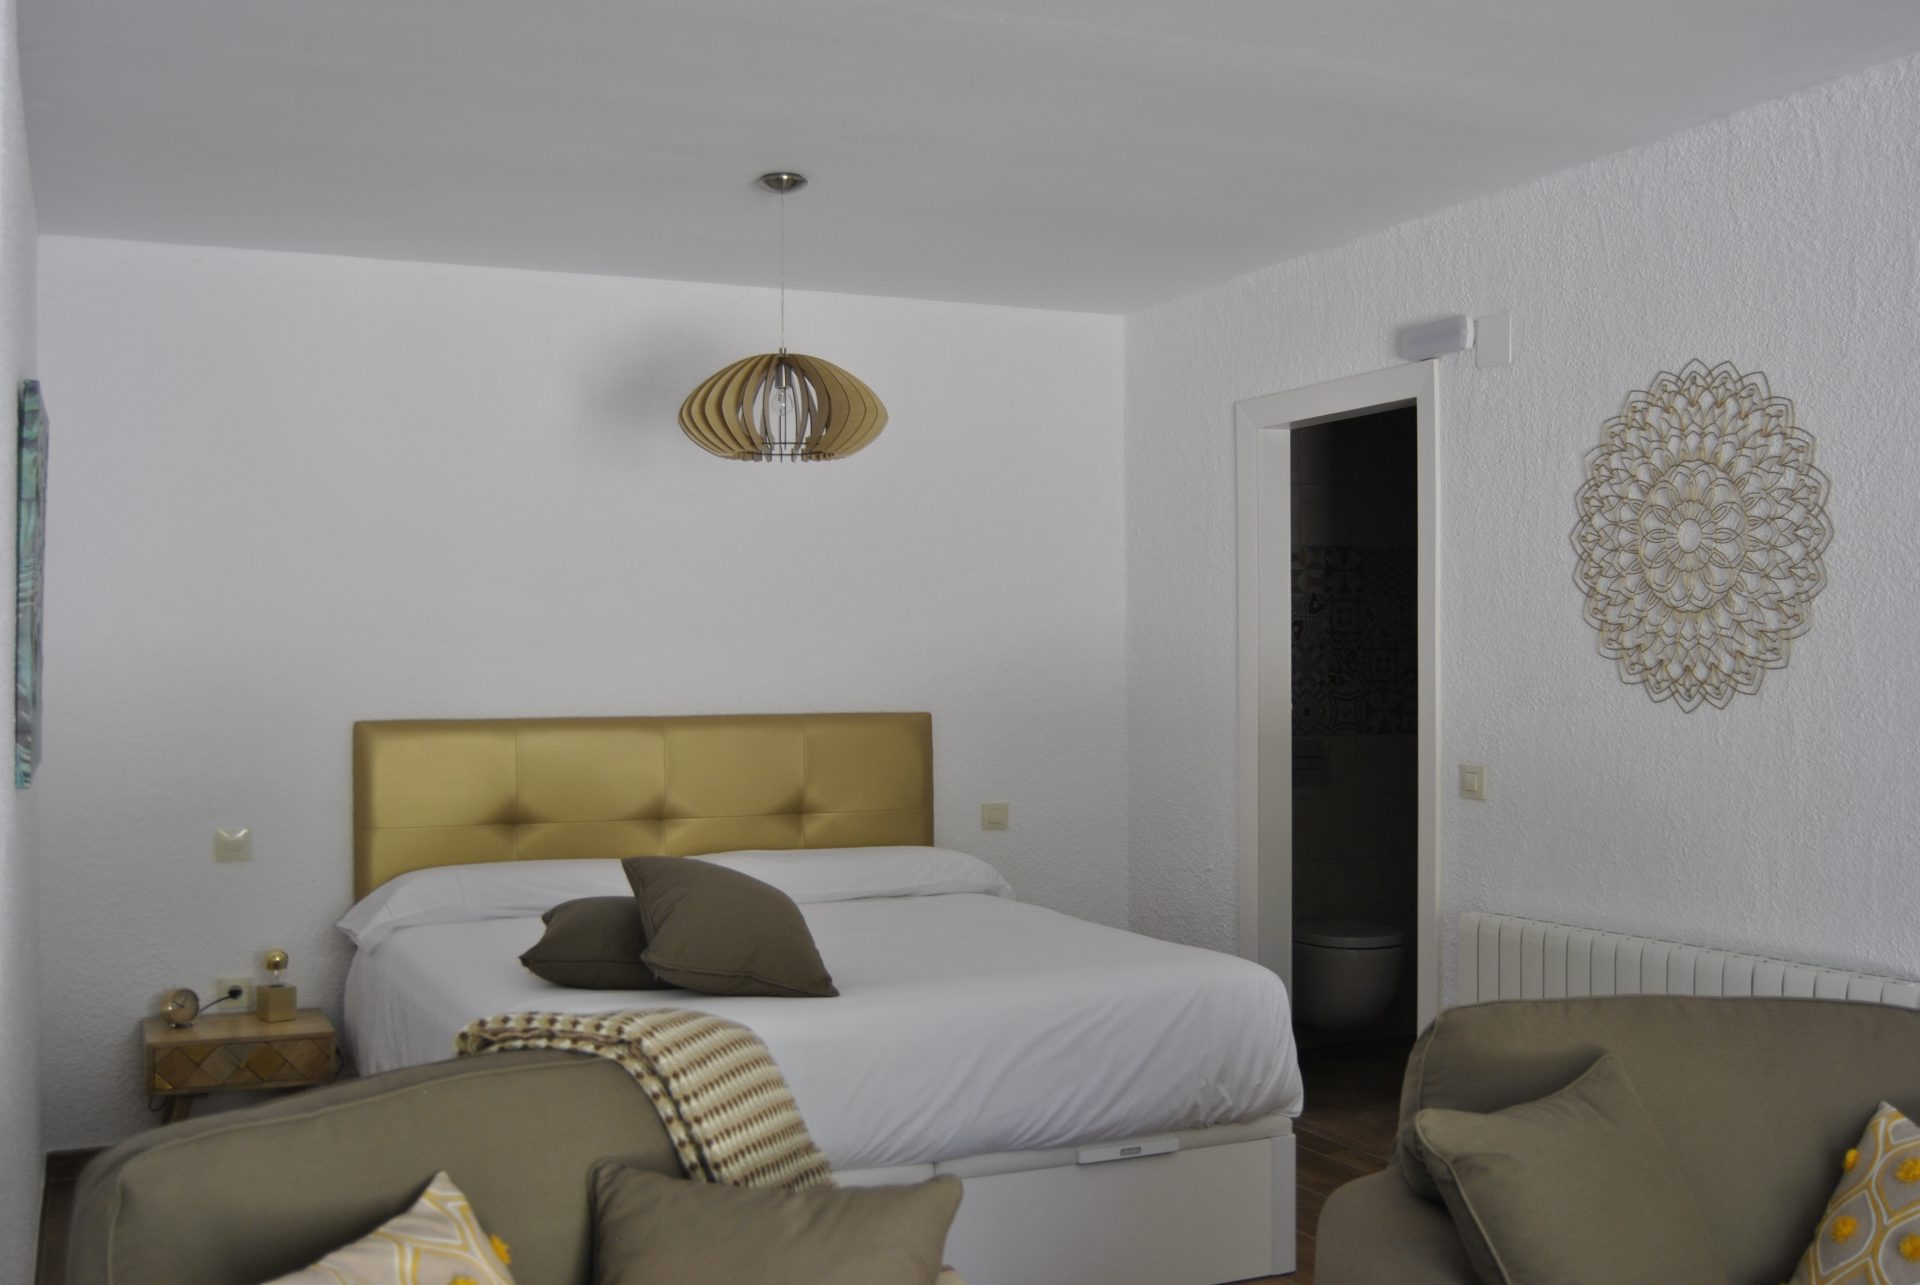 De studio Mariposa heeft een comfortabel 2 persoonsbed met een dikke, luxe matras (180x200) en nachtkastjes.